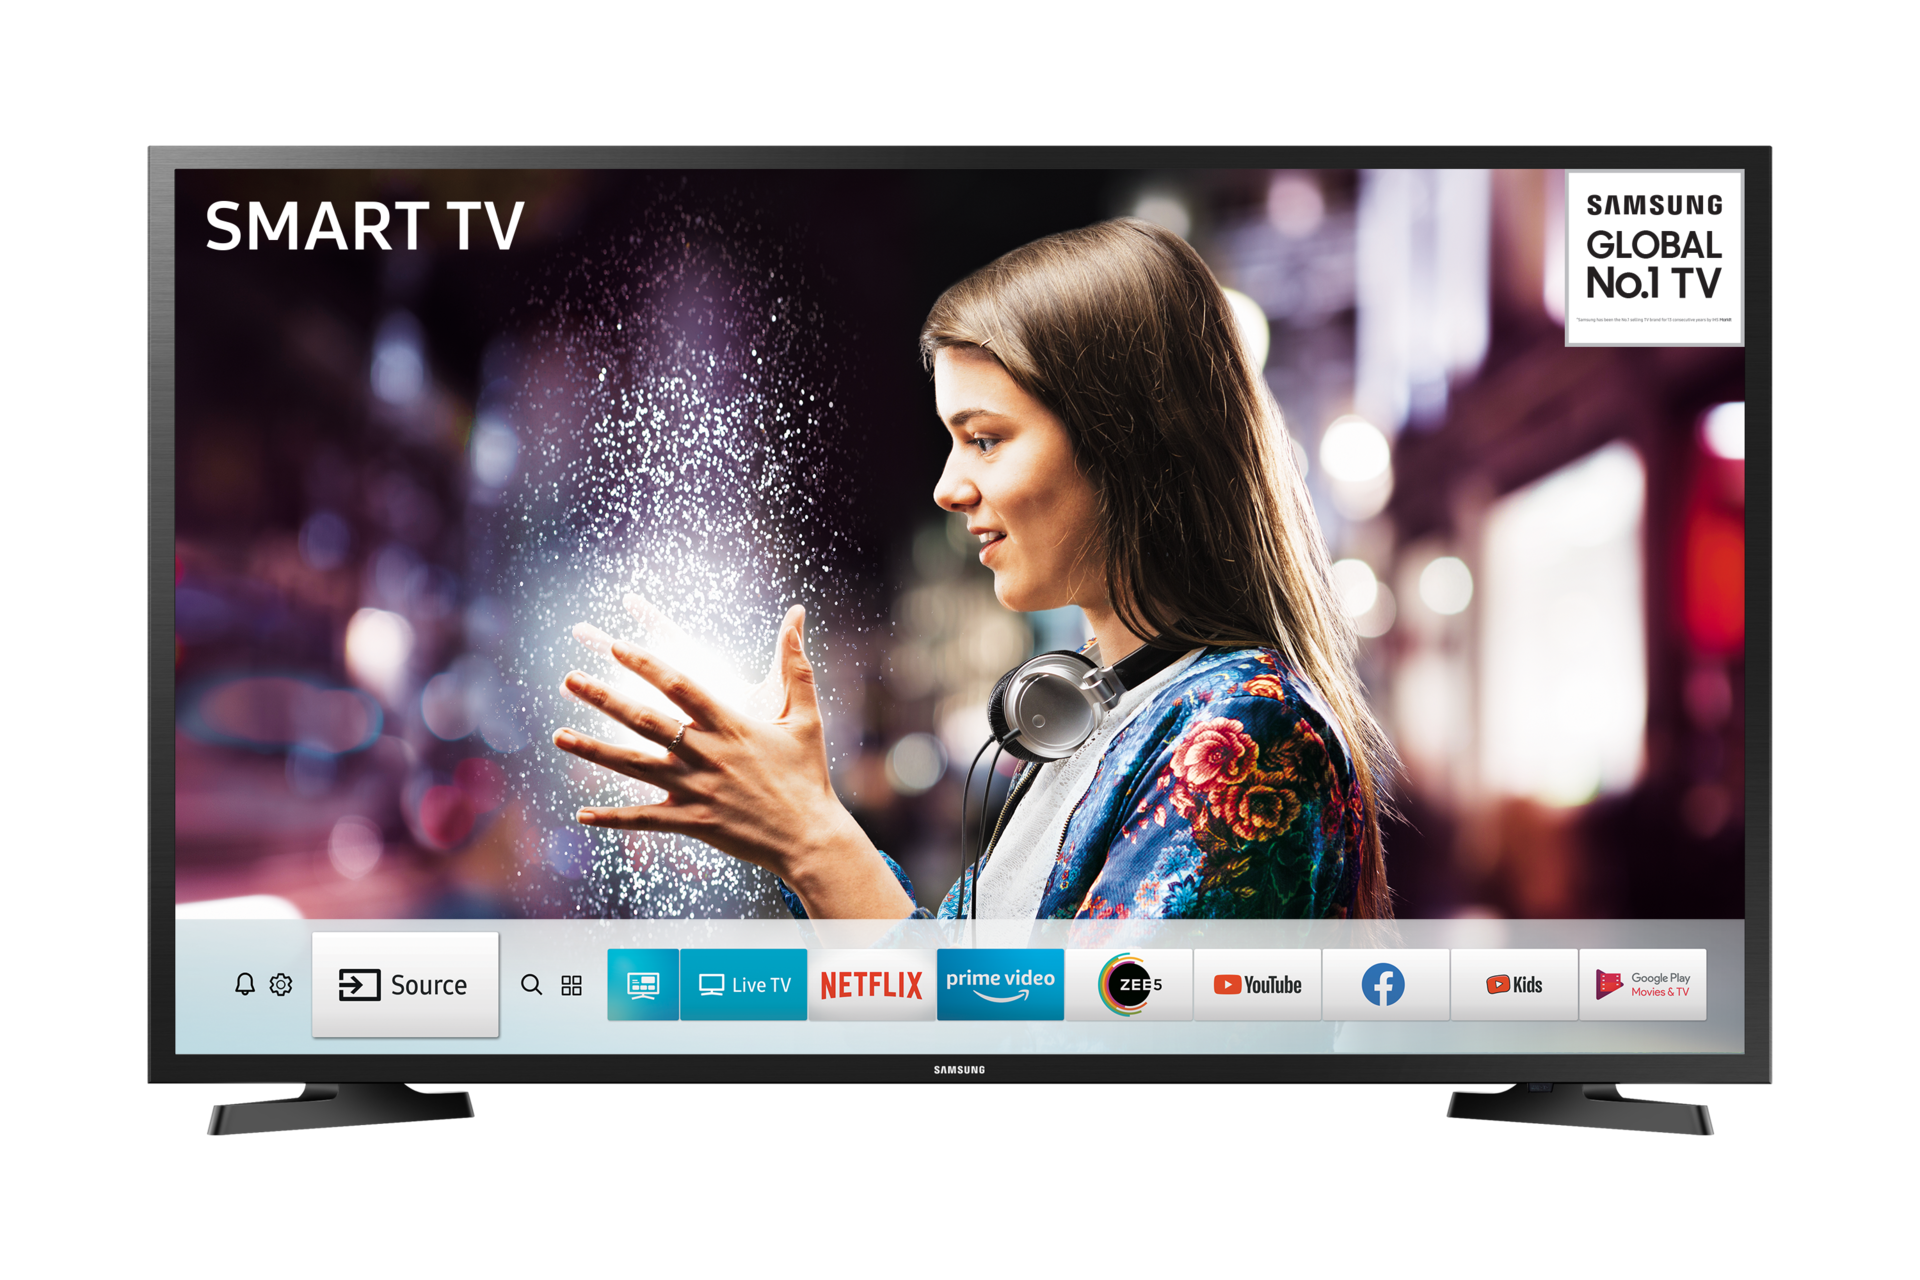 Parasiet Aanhankelijk Economie Samsung 43 Inch (108cm) 43T5770 Smart HD TV - Price | Samsung India